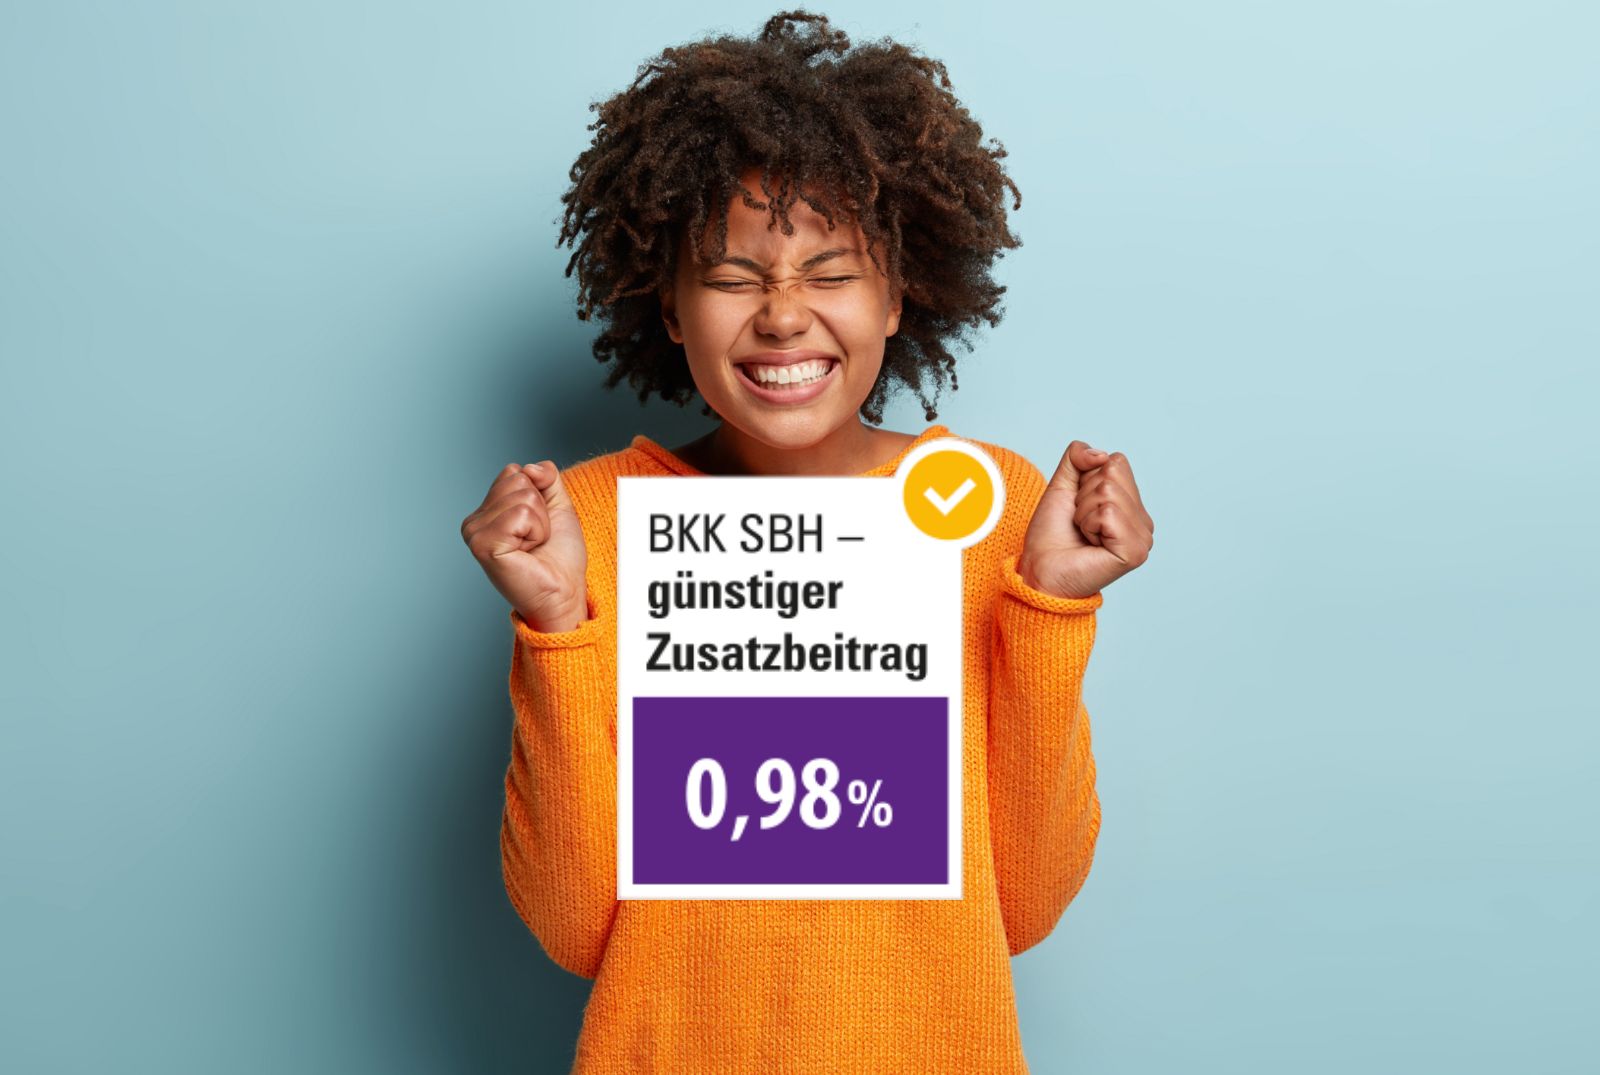 Frau freut sich, im Vordergrund ist eine Grafik mit dem Text "BKK SBH - günstiger Zusatzbeitrag 0,98%" eingeblendet